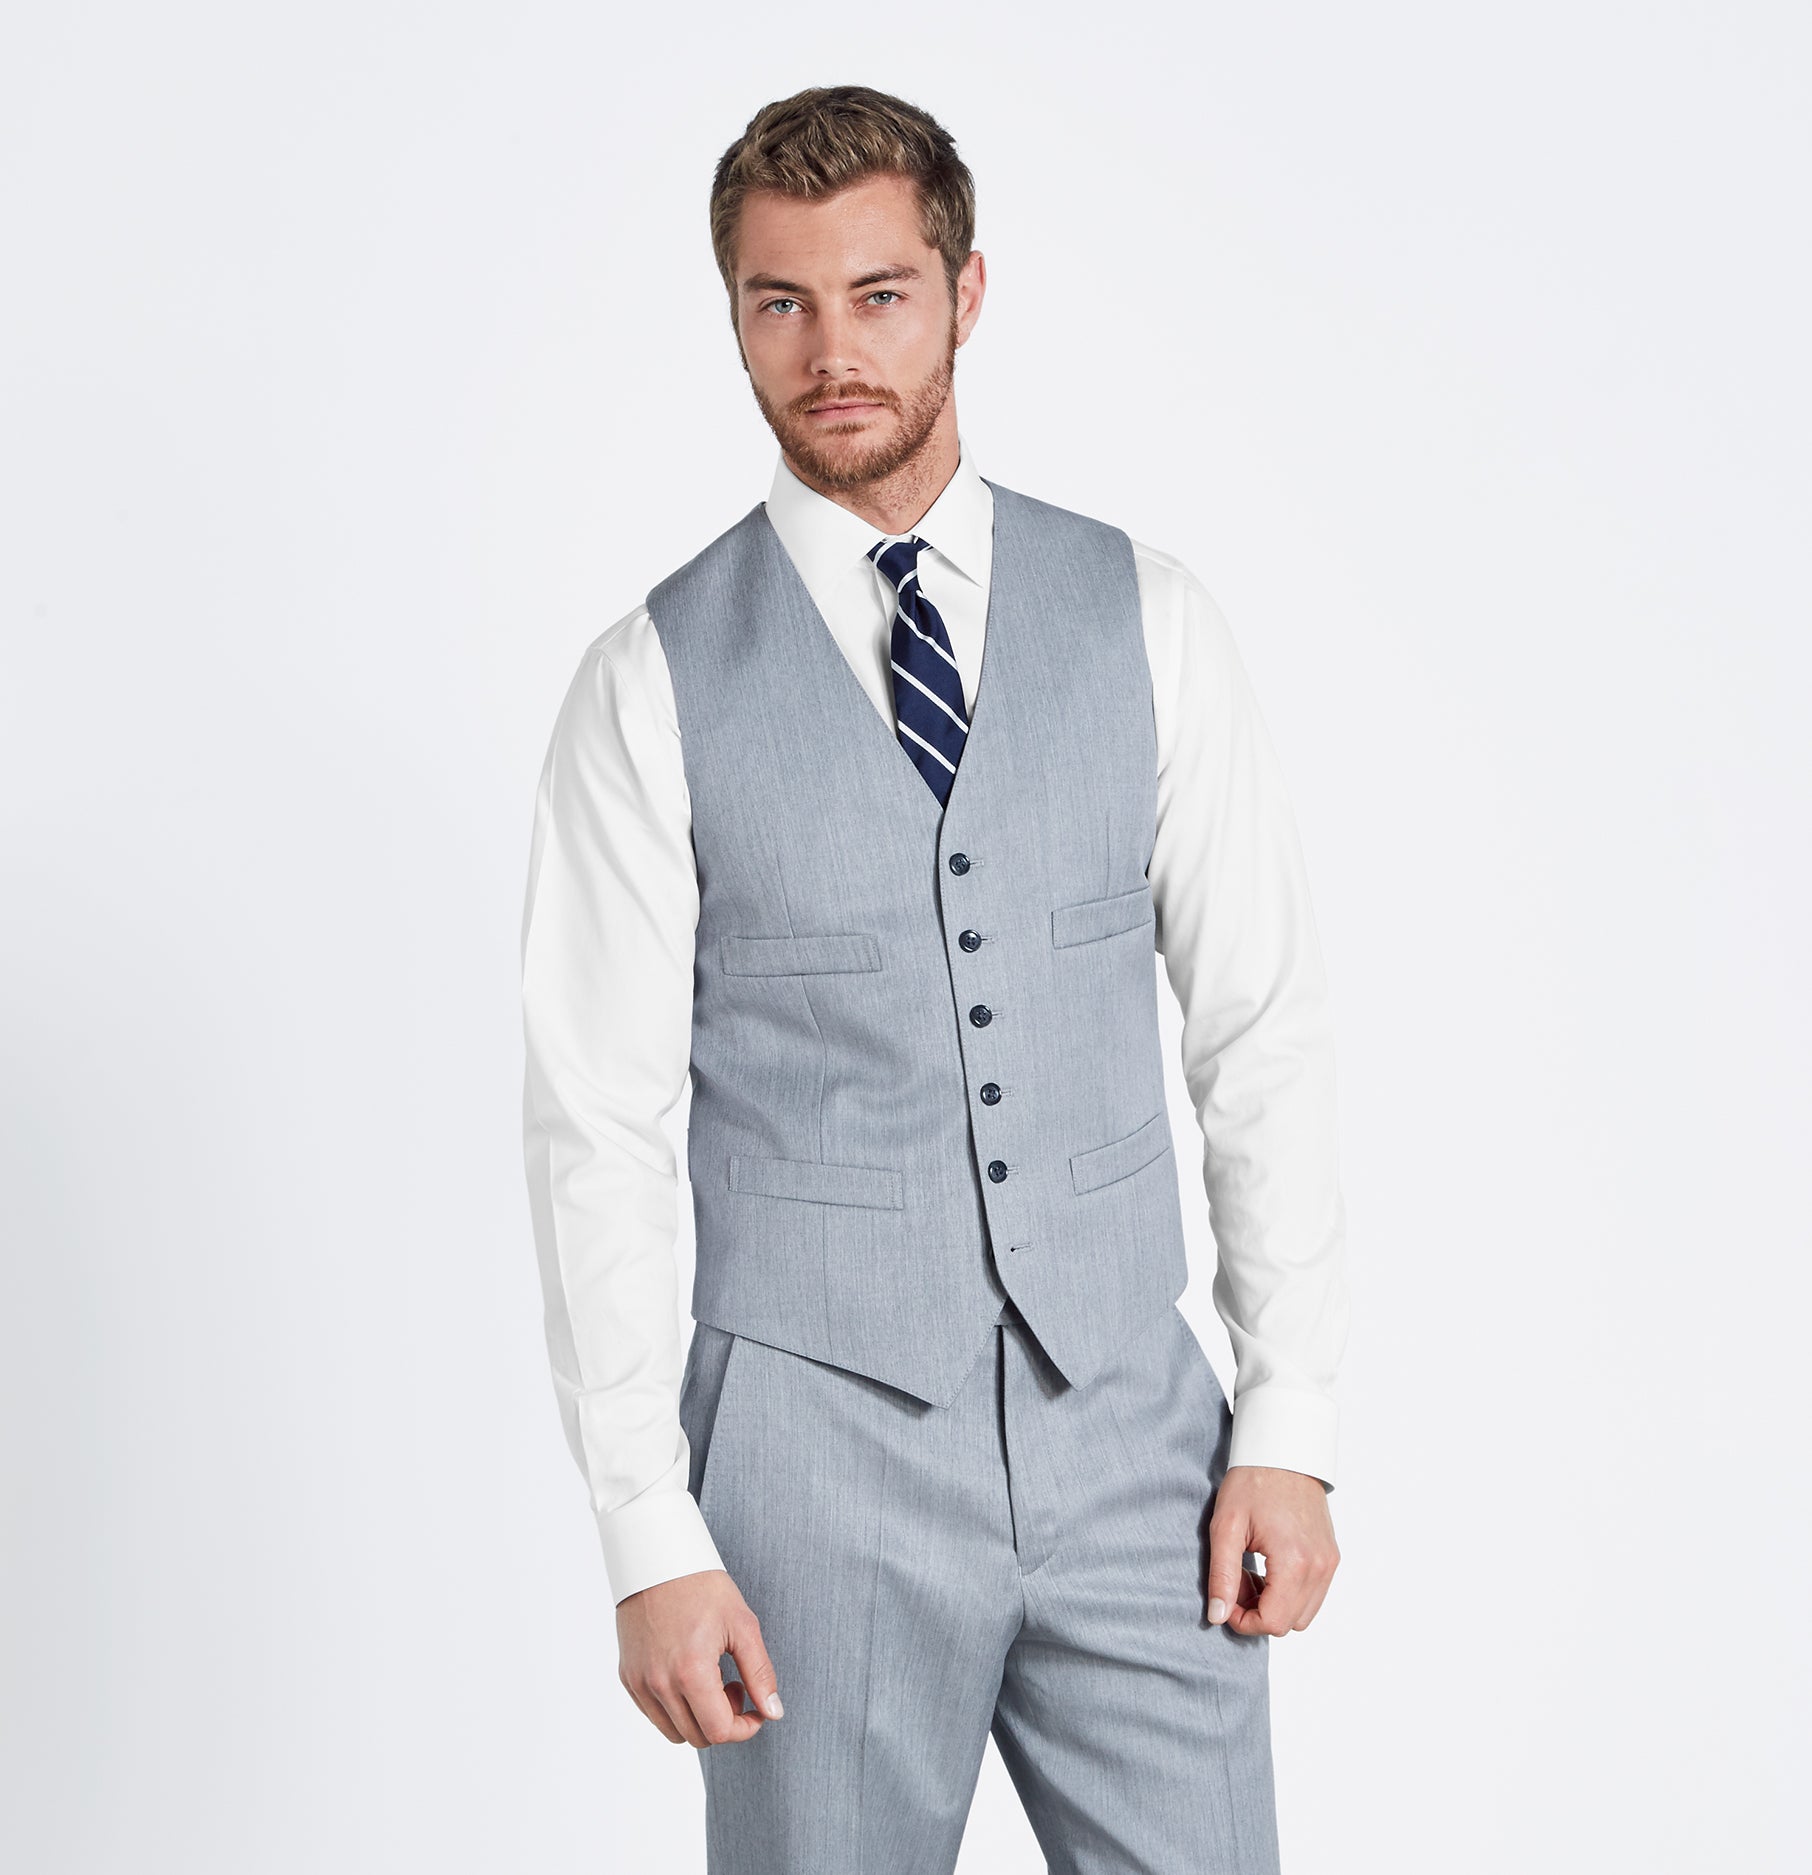 hverdagskost under Ligegyldighed Light Grey Suit Vest | The Black Tux